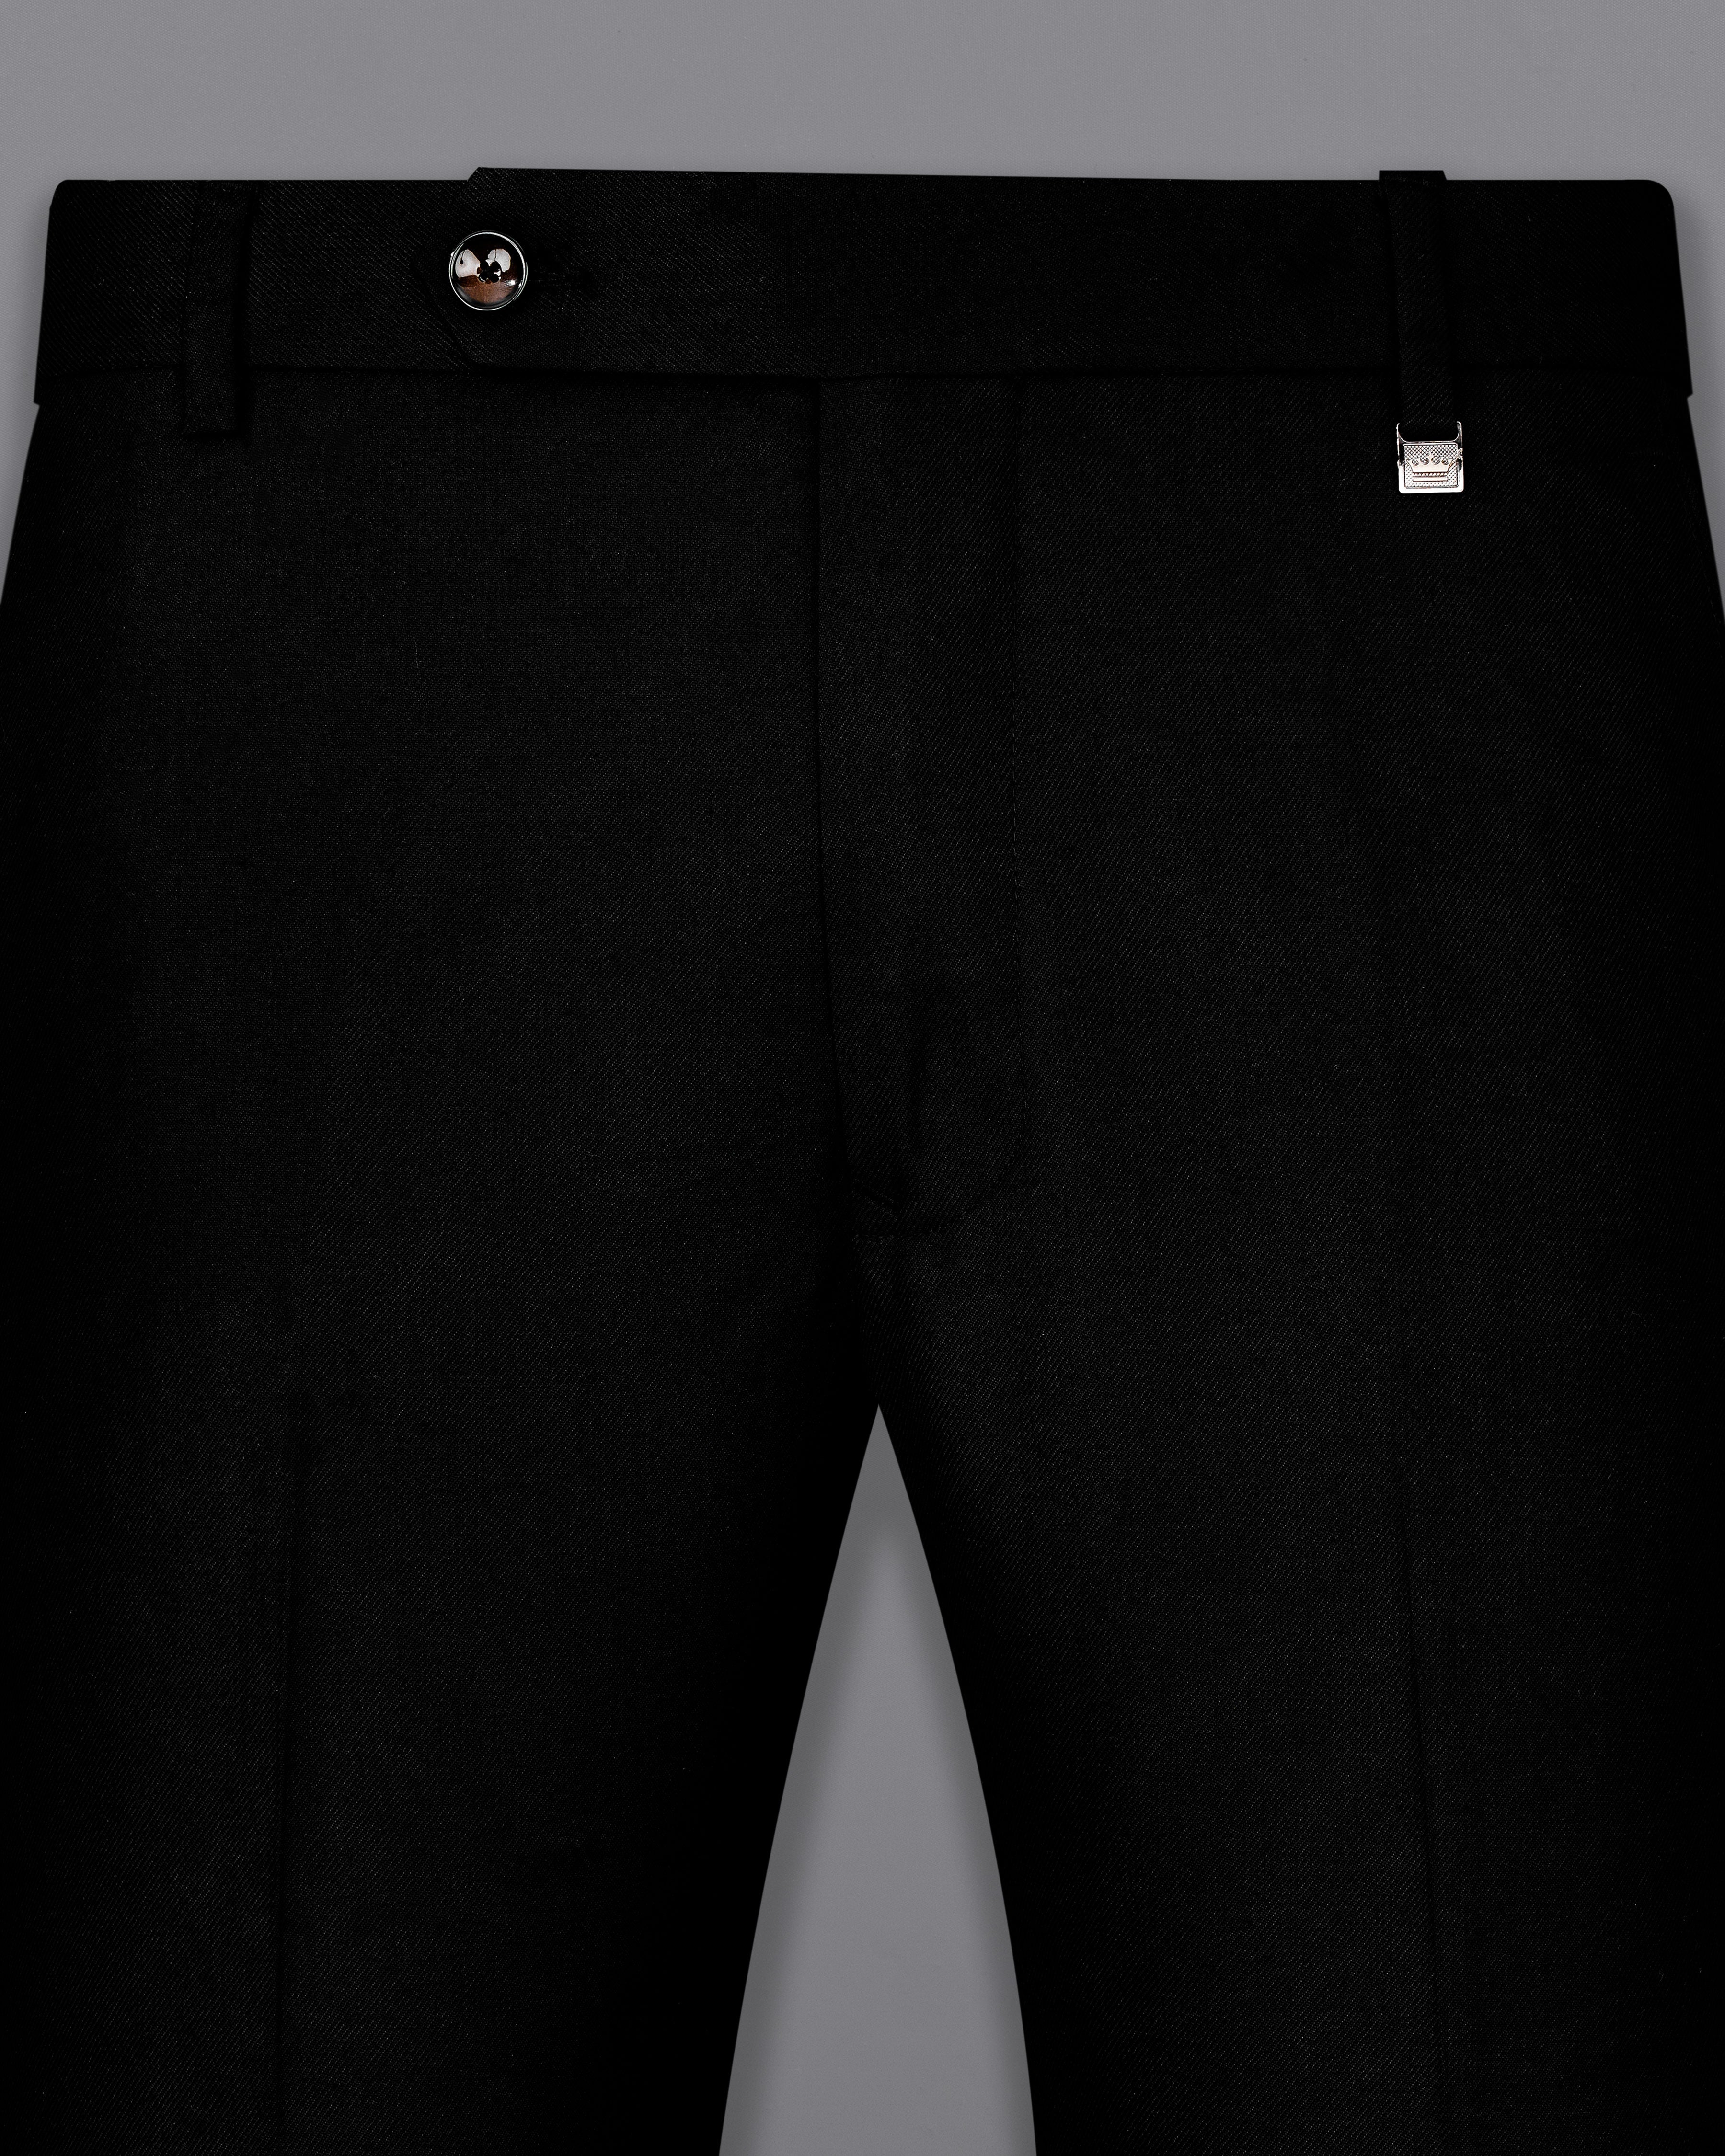 Jade Black Textured Pants T2485-28, T2485-30, T2485-32, T2485-34, T2485-36, T2485-38, T2485-40, T2485-42, T2485-44